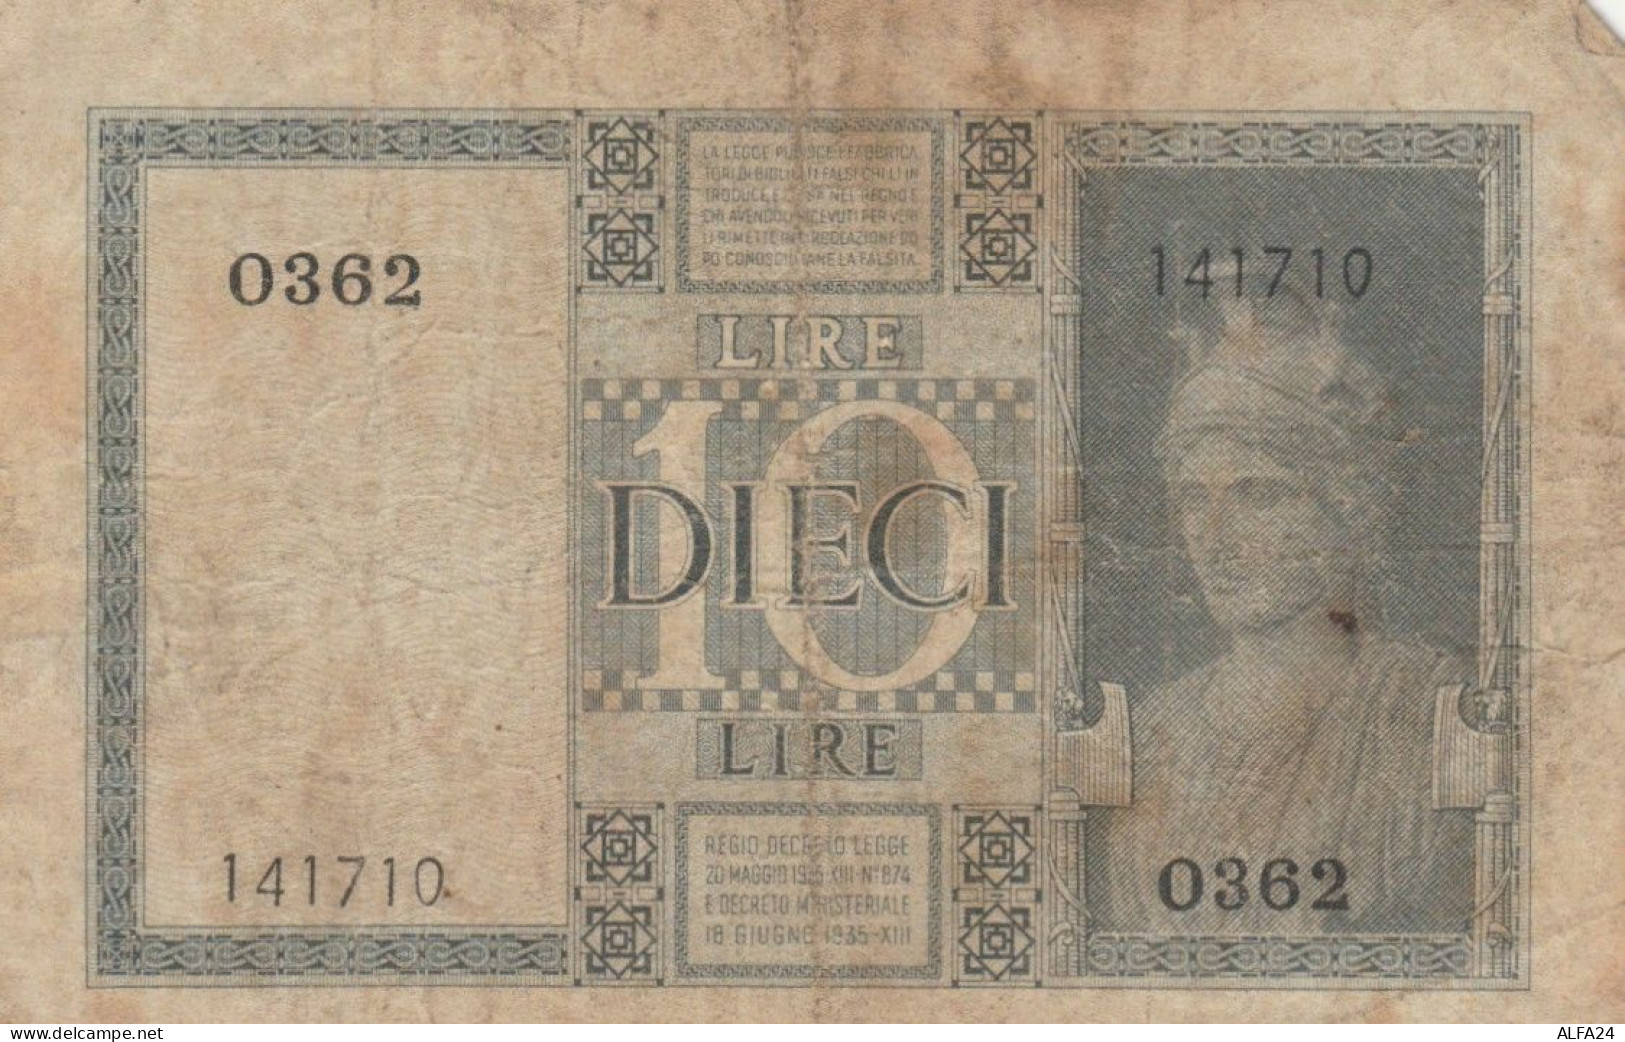 BANCONOTA ITALIA LIRE 10 1939 BIGLIETTO DI STATO VF (VS526 - Regno D'Italia – 10 Lire